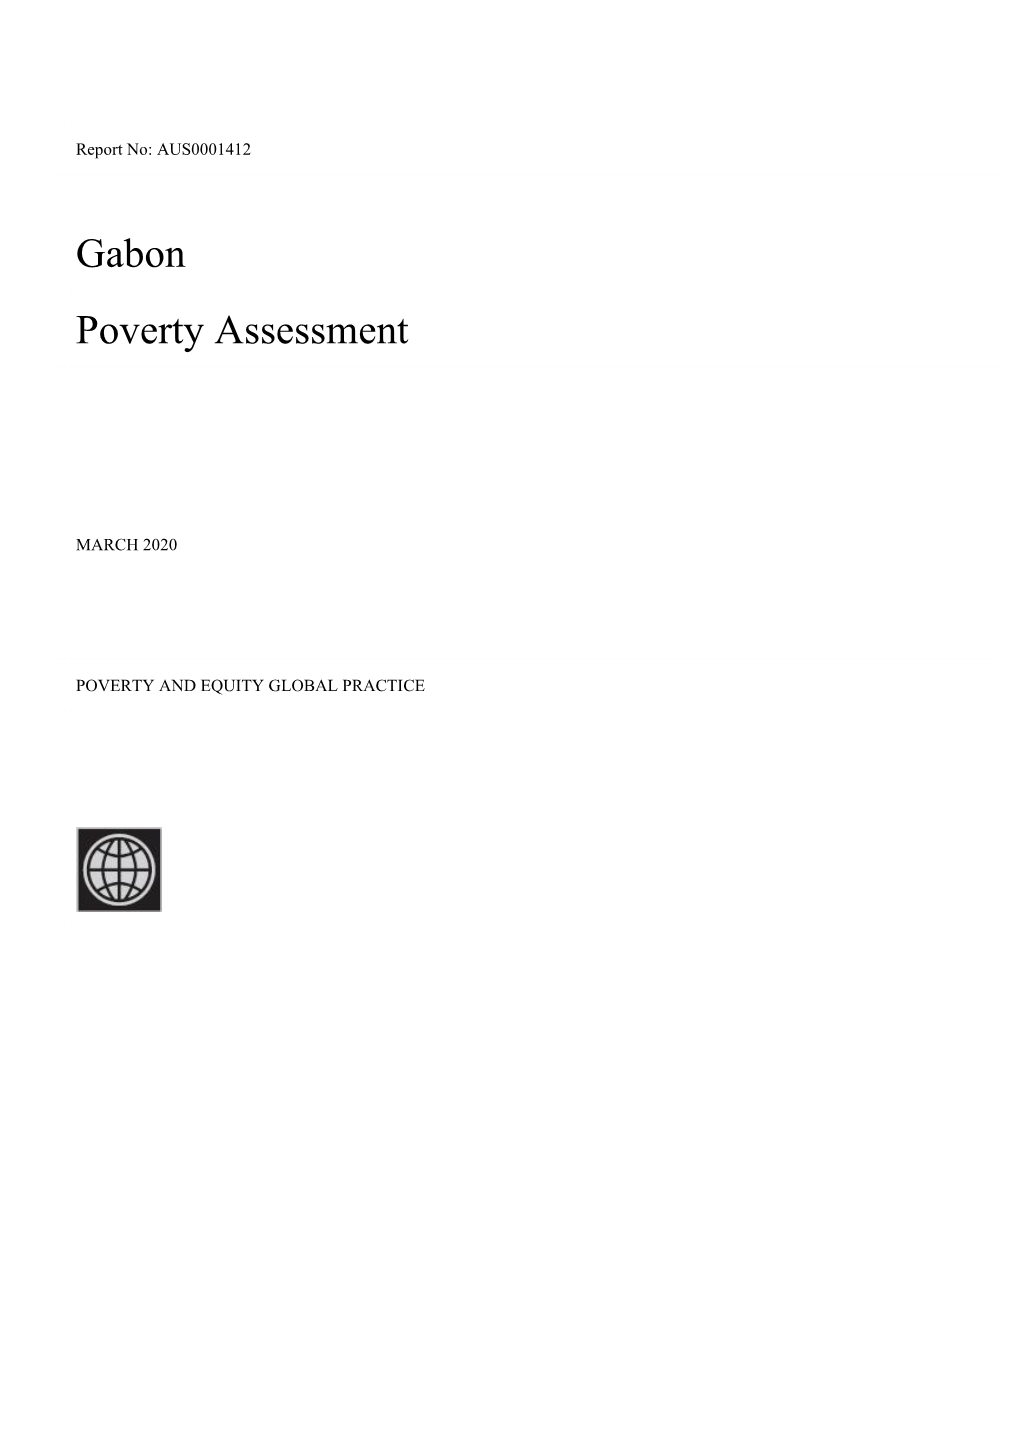 Gabon Poverty Assessment